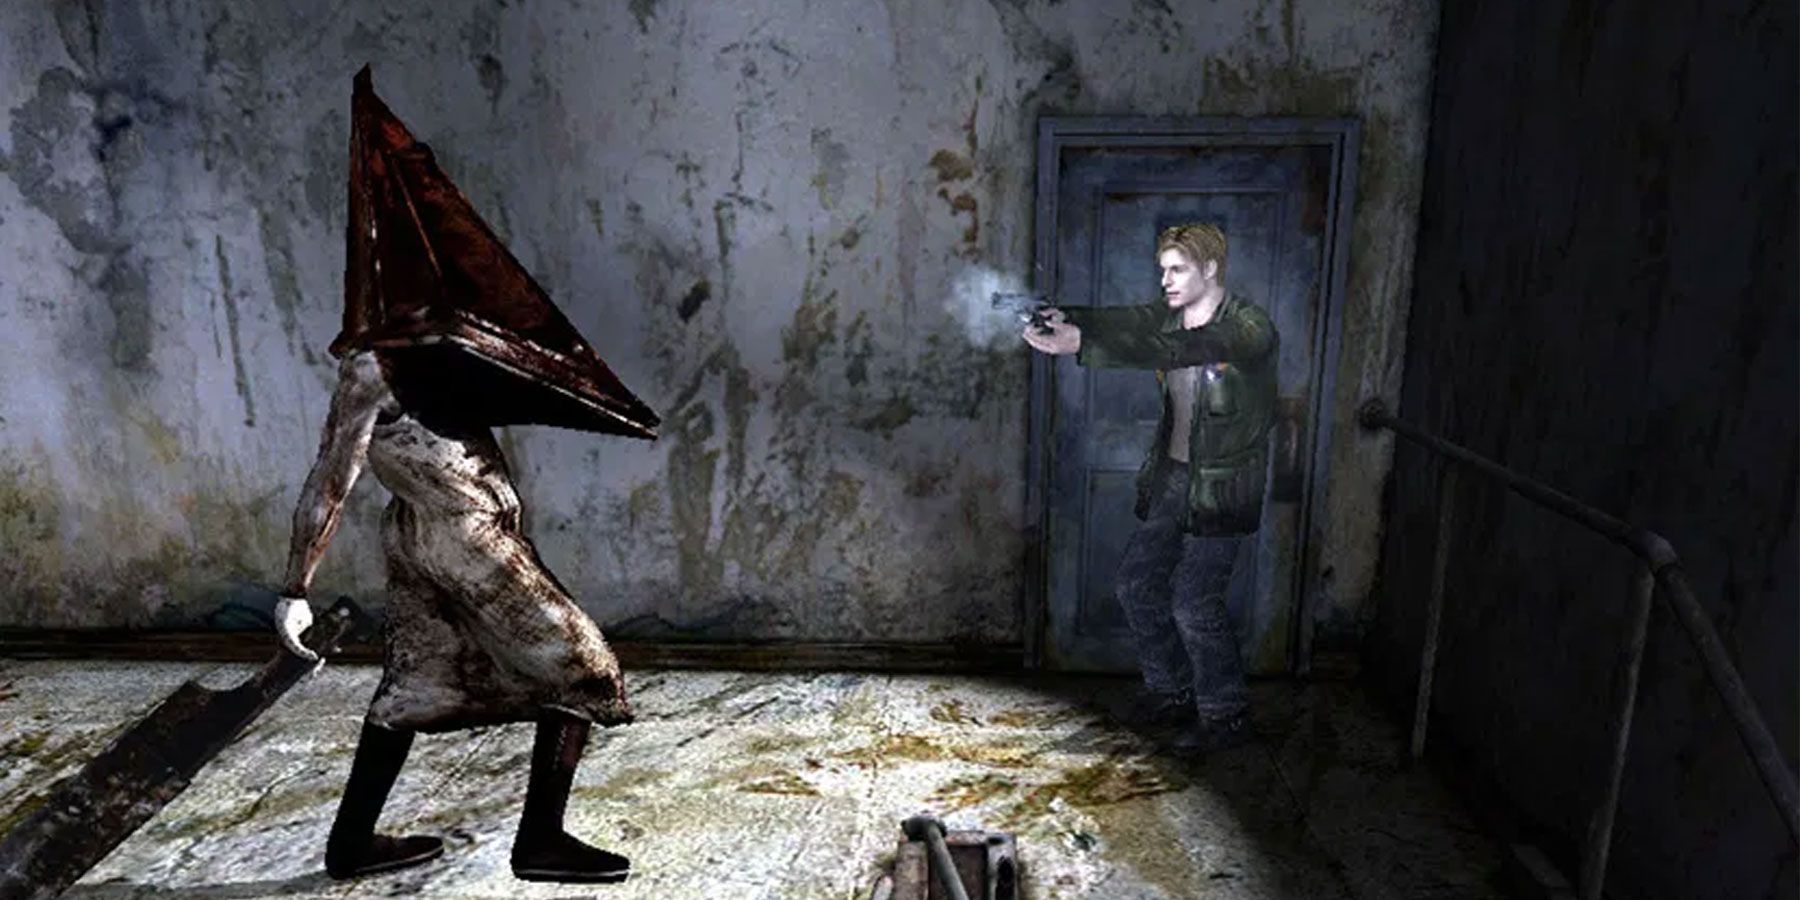 עכשיו אמור להיות הזמן לגרסה מחודשת של Silent Hill 2